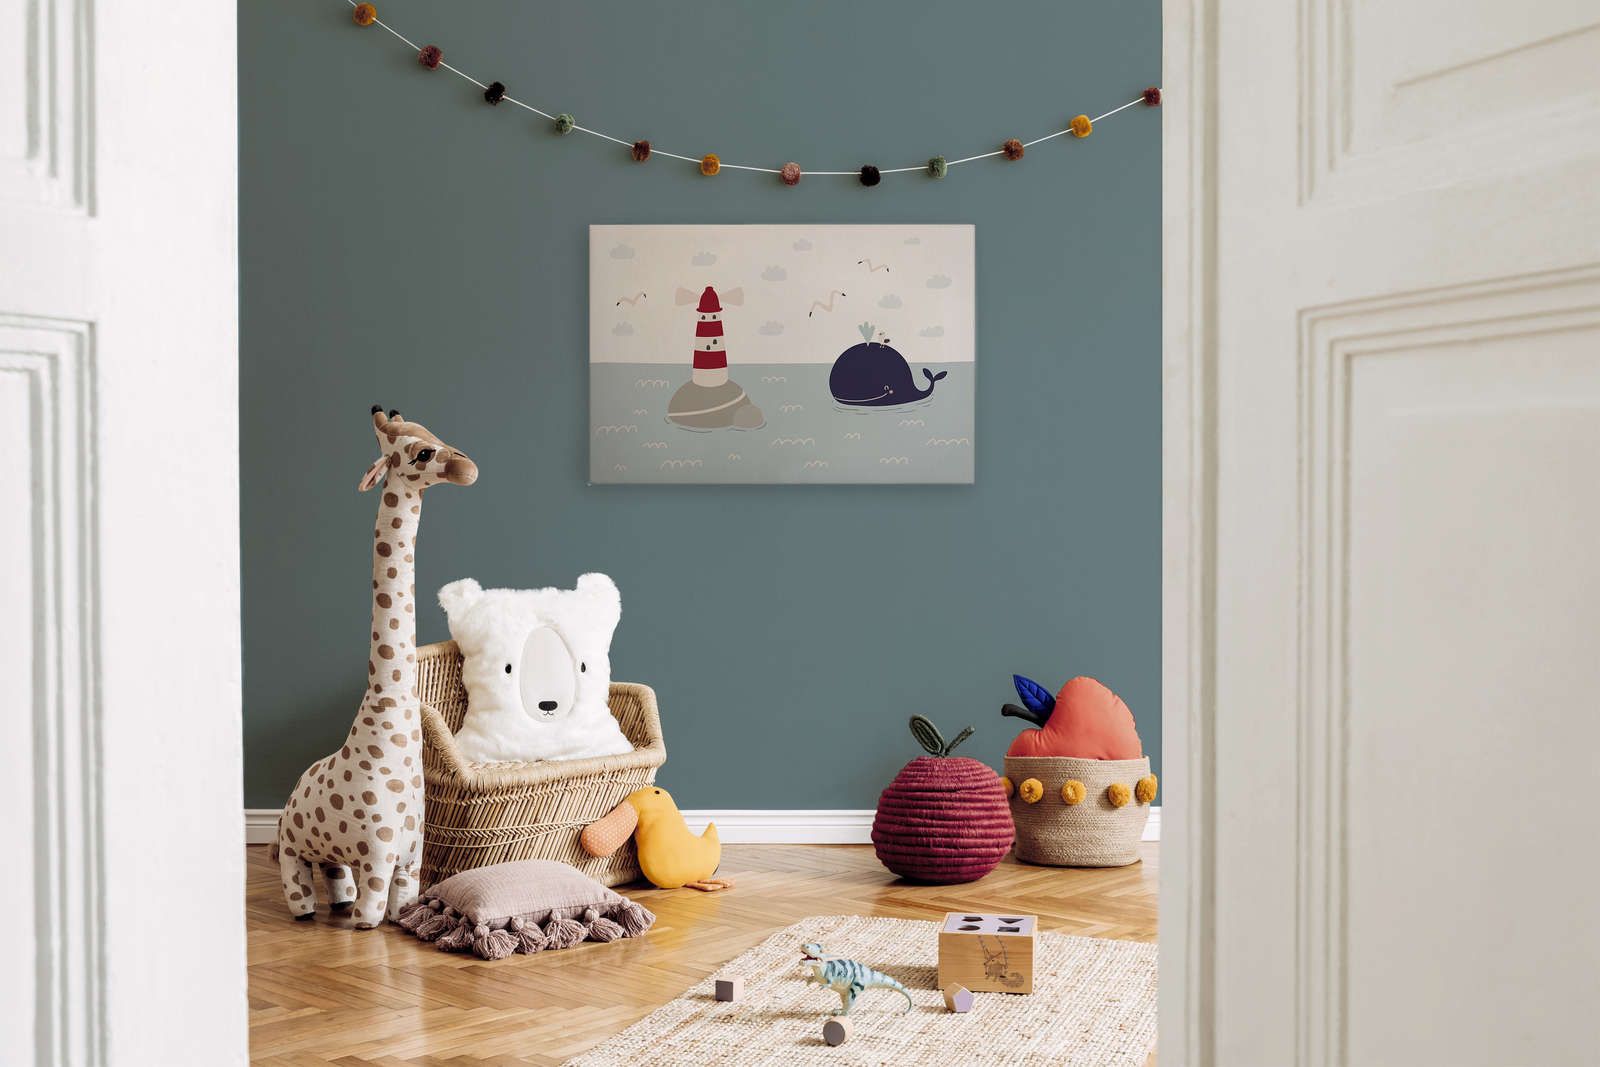             Toile pour chambre d'enfant avec phare et baleine - 90 cm x 60 cm
        